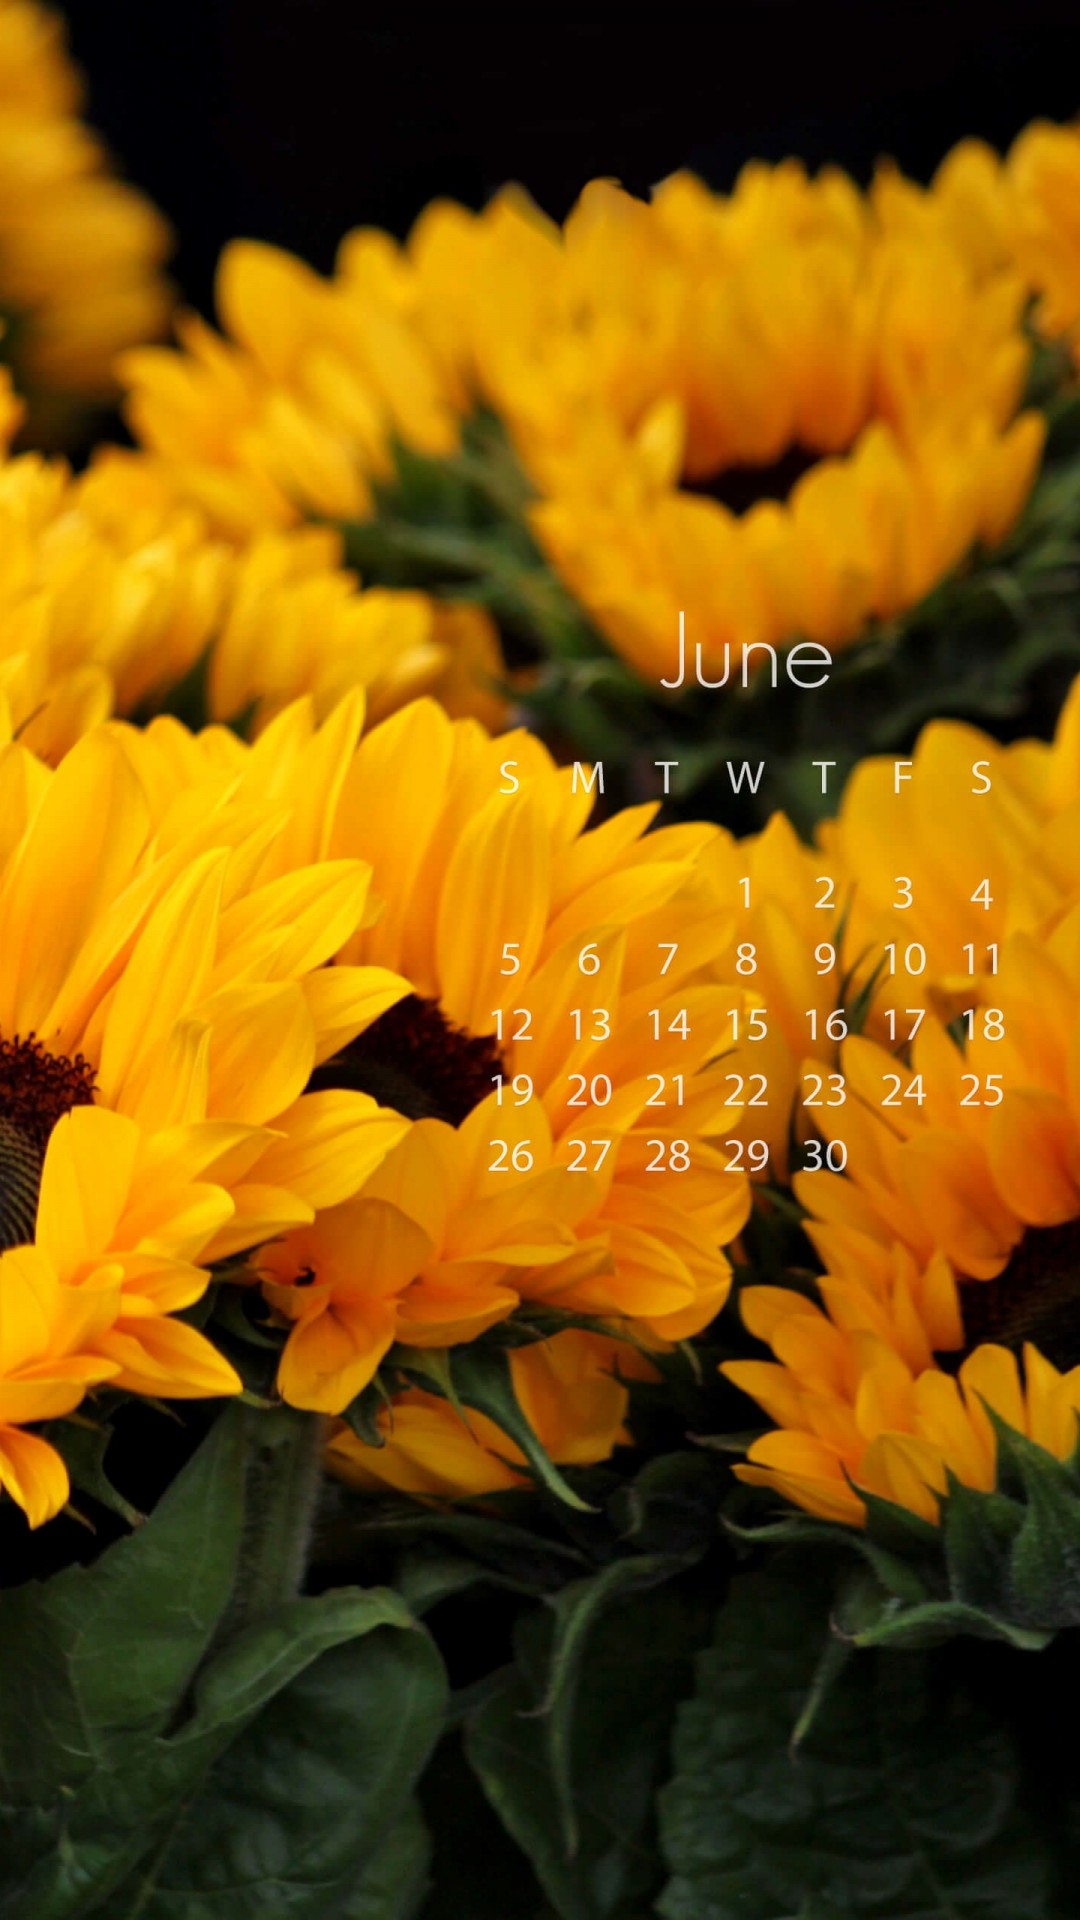 June 2016 Calendar Wallpaper for SAMSUNG Galaxy S4